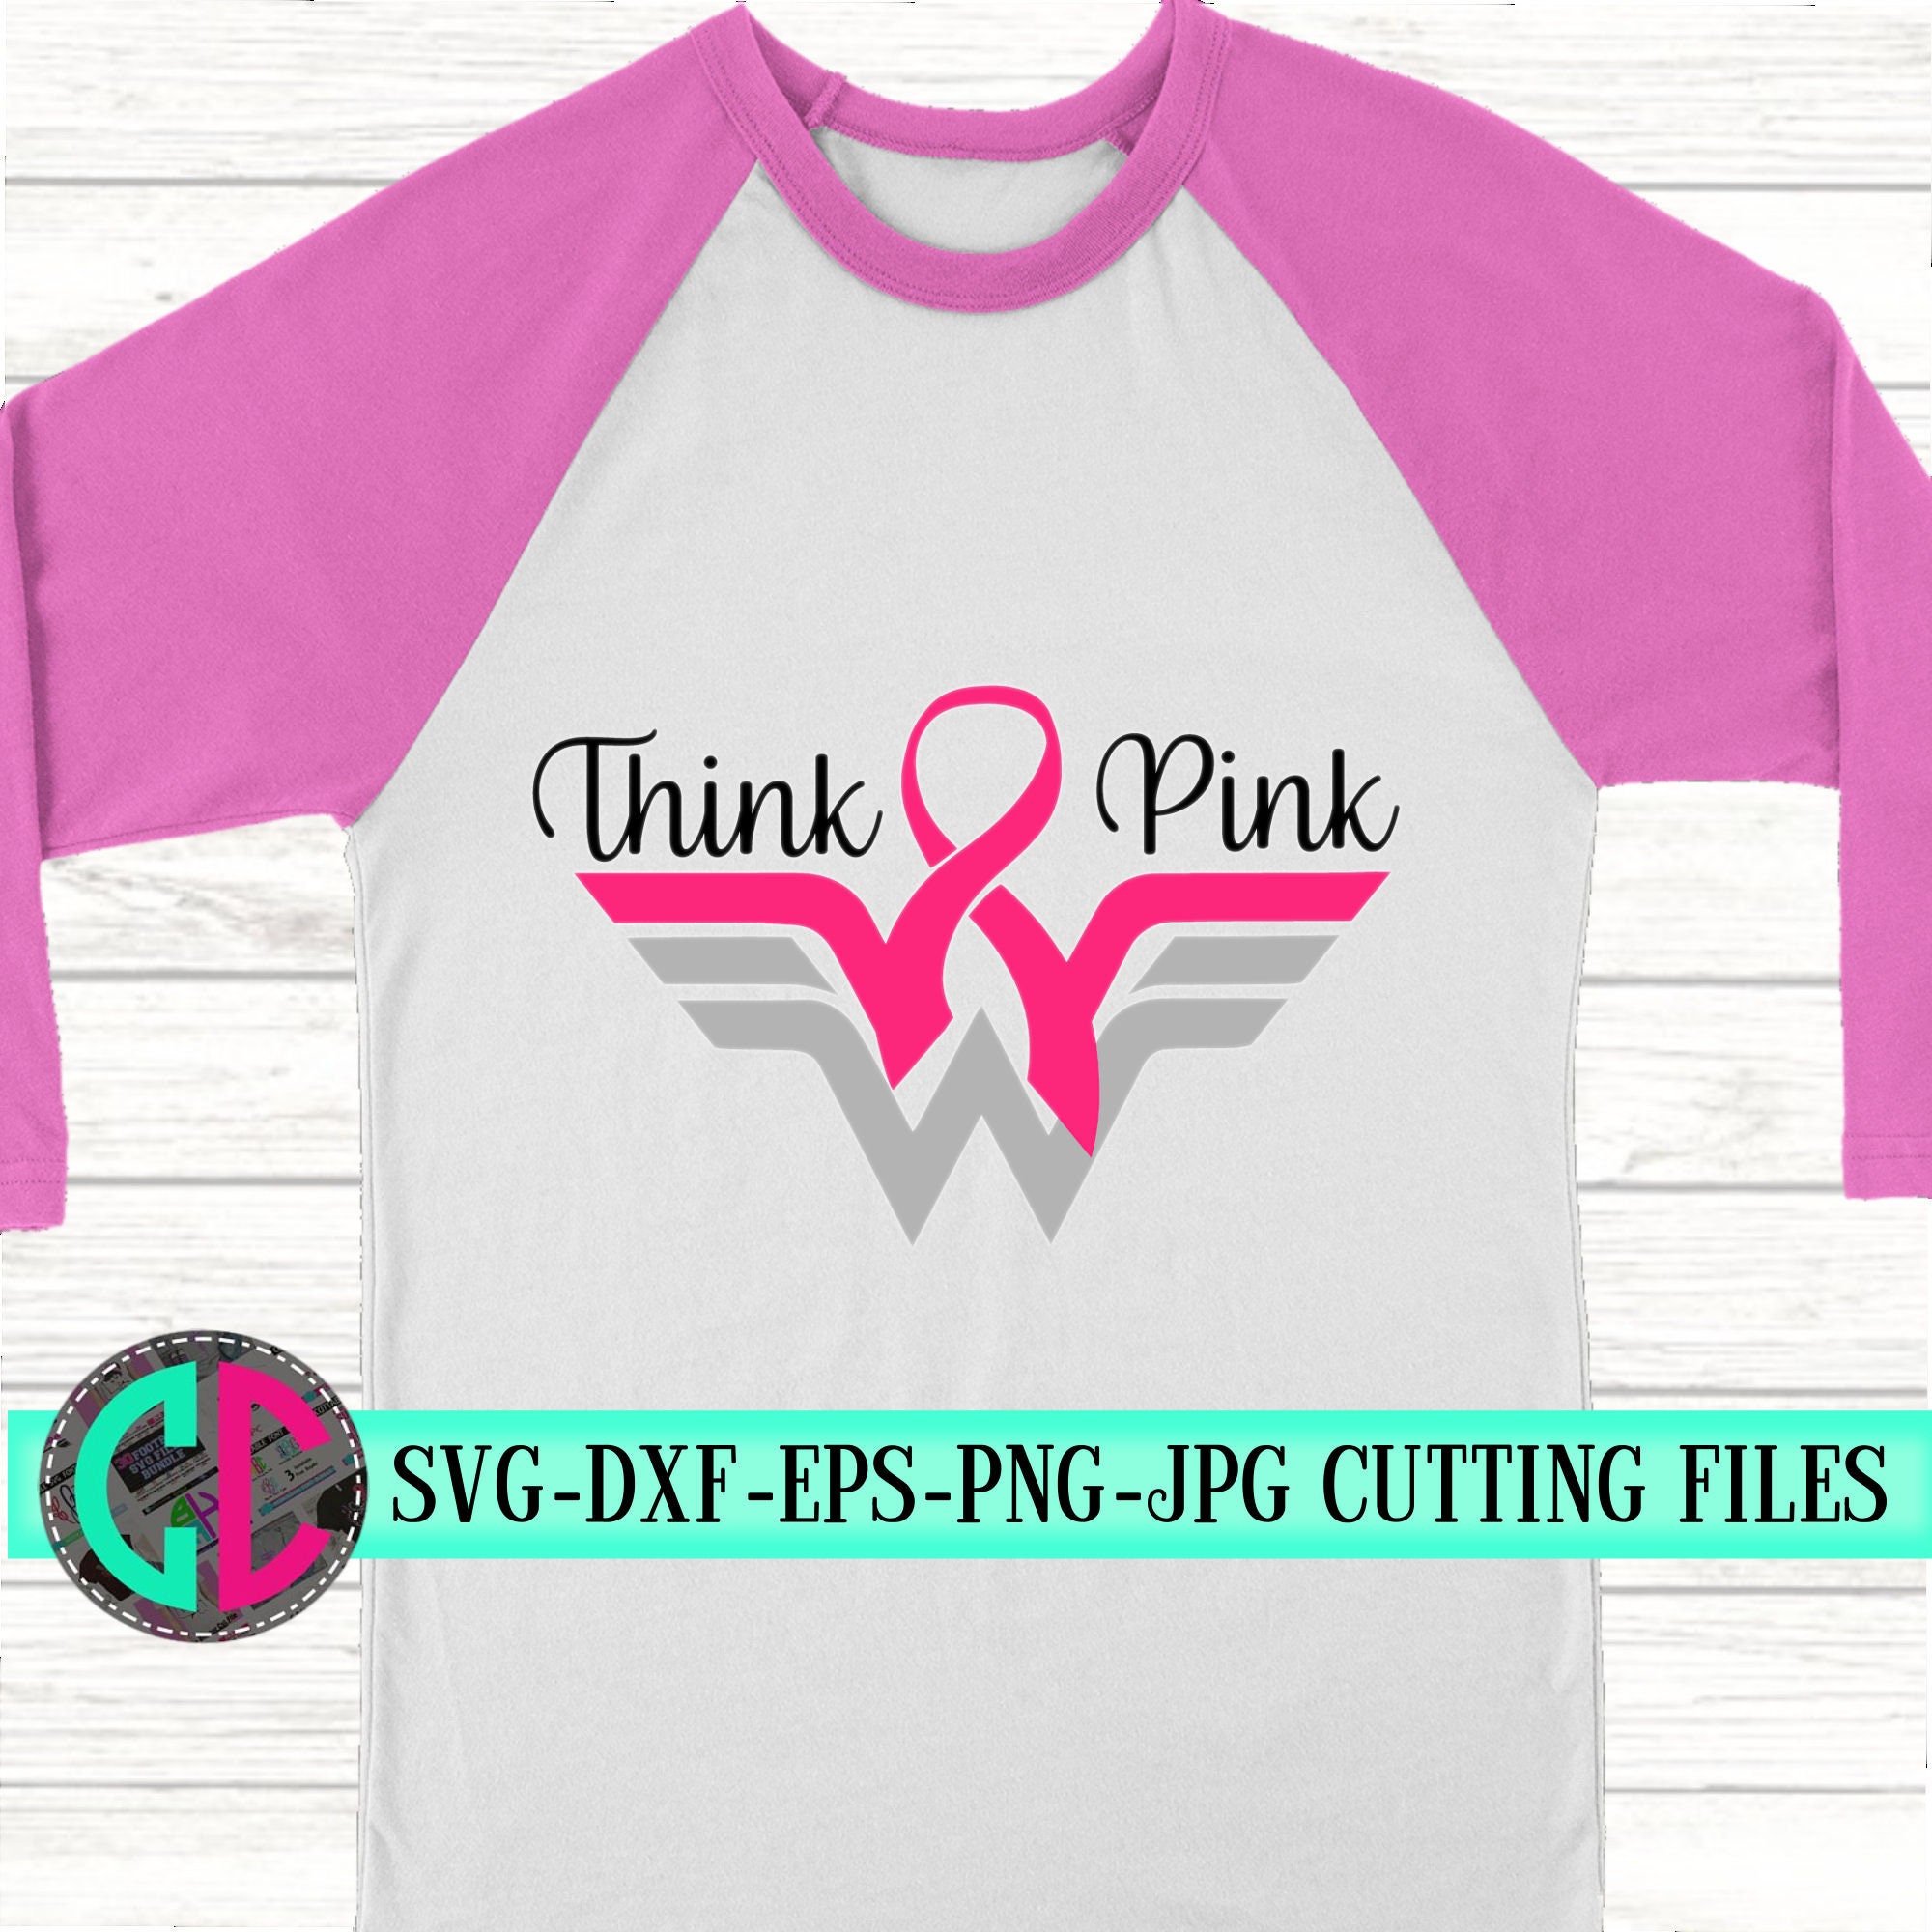 Download breast cancer wonder woman svg, cancer survivor svg, breast cancer svg, awareness ribbon svg ...